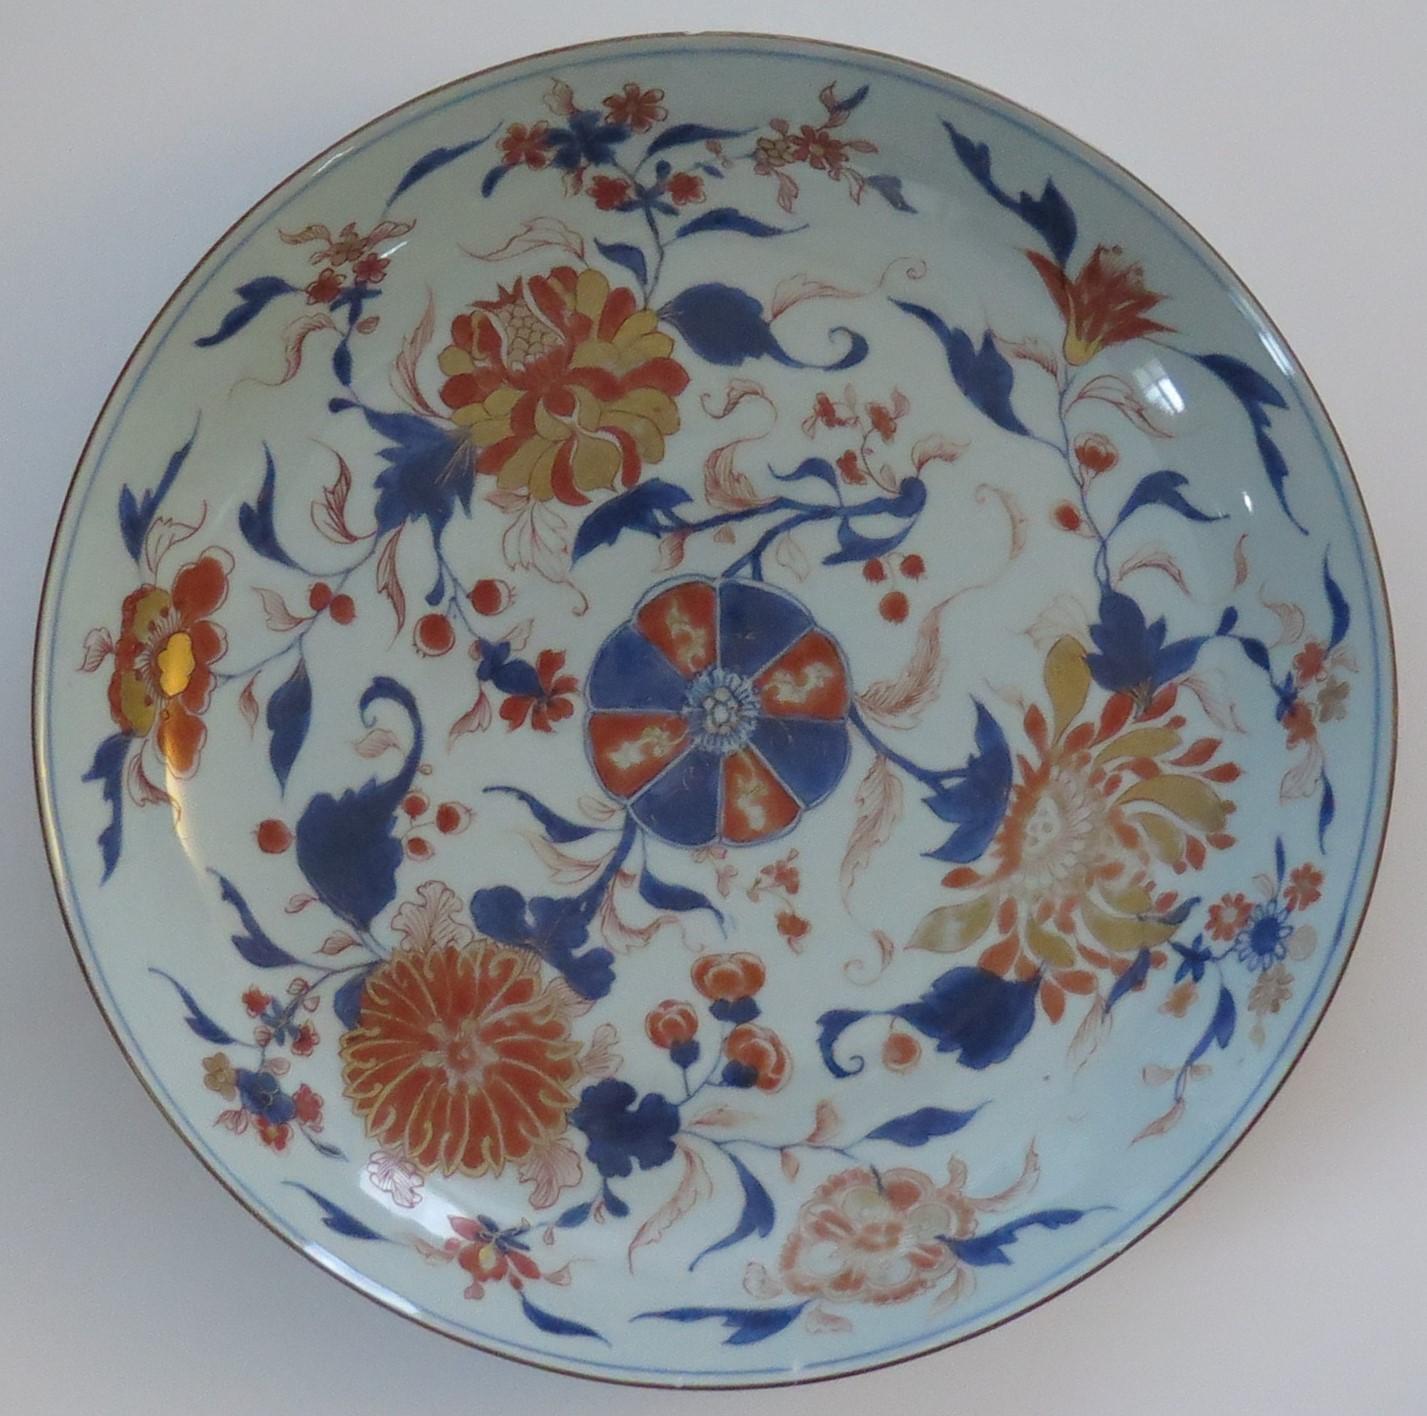 Si tratta di un bellissimo piatto di grandi dimensioni in porcellana cinese Imari Porcelain, dipinto a mano, risalente al periodo Qing, Kangxi, 1662-1722, e datato circa 1710.

I piatti o i caricatori del periodo Kangxi di grande diametro (14,7